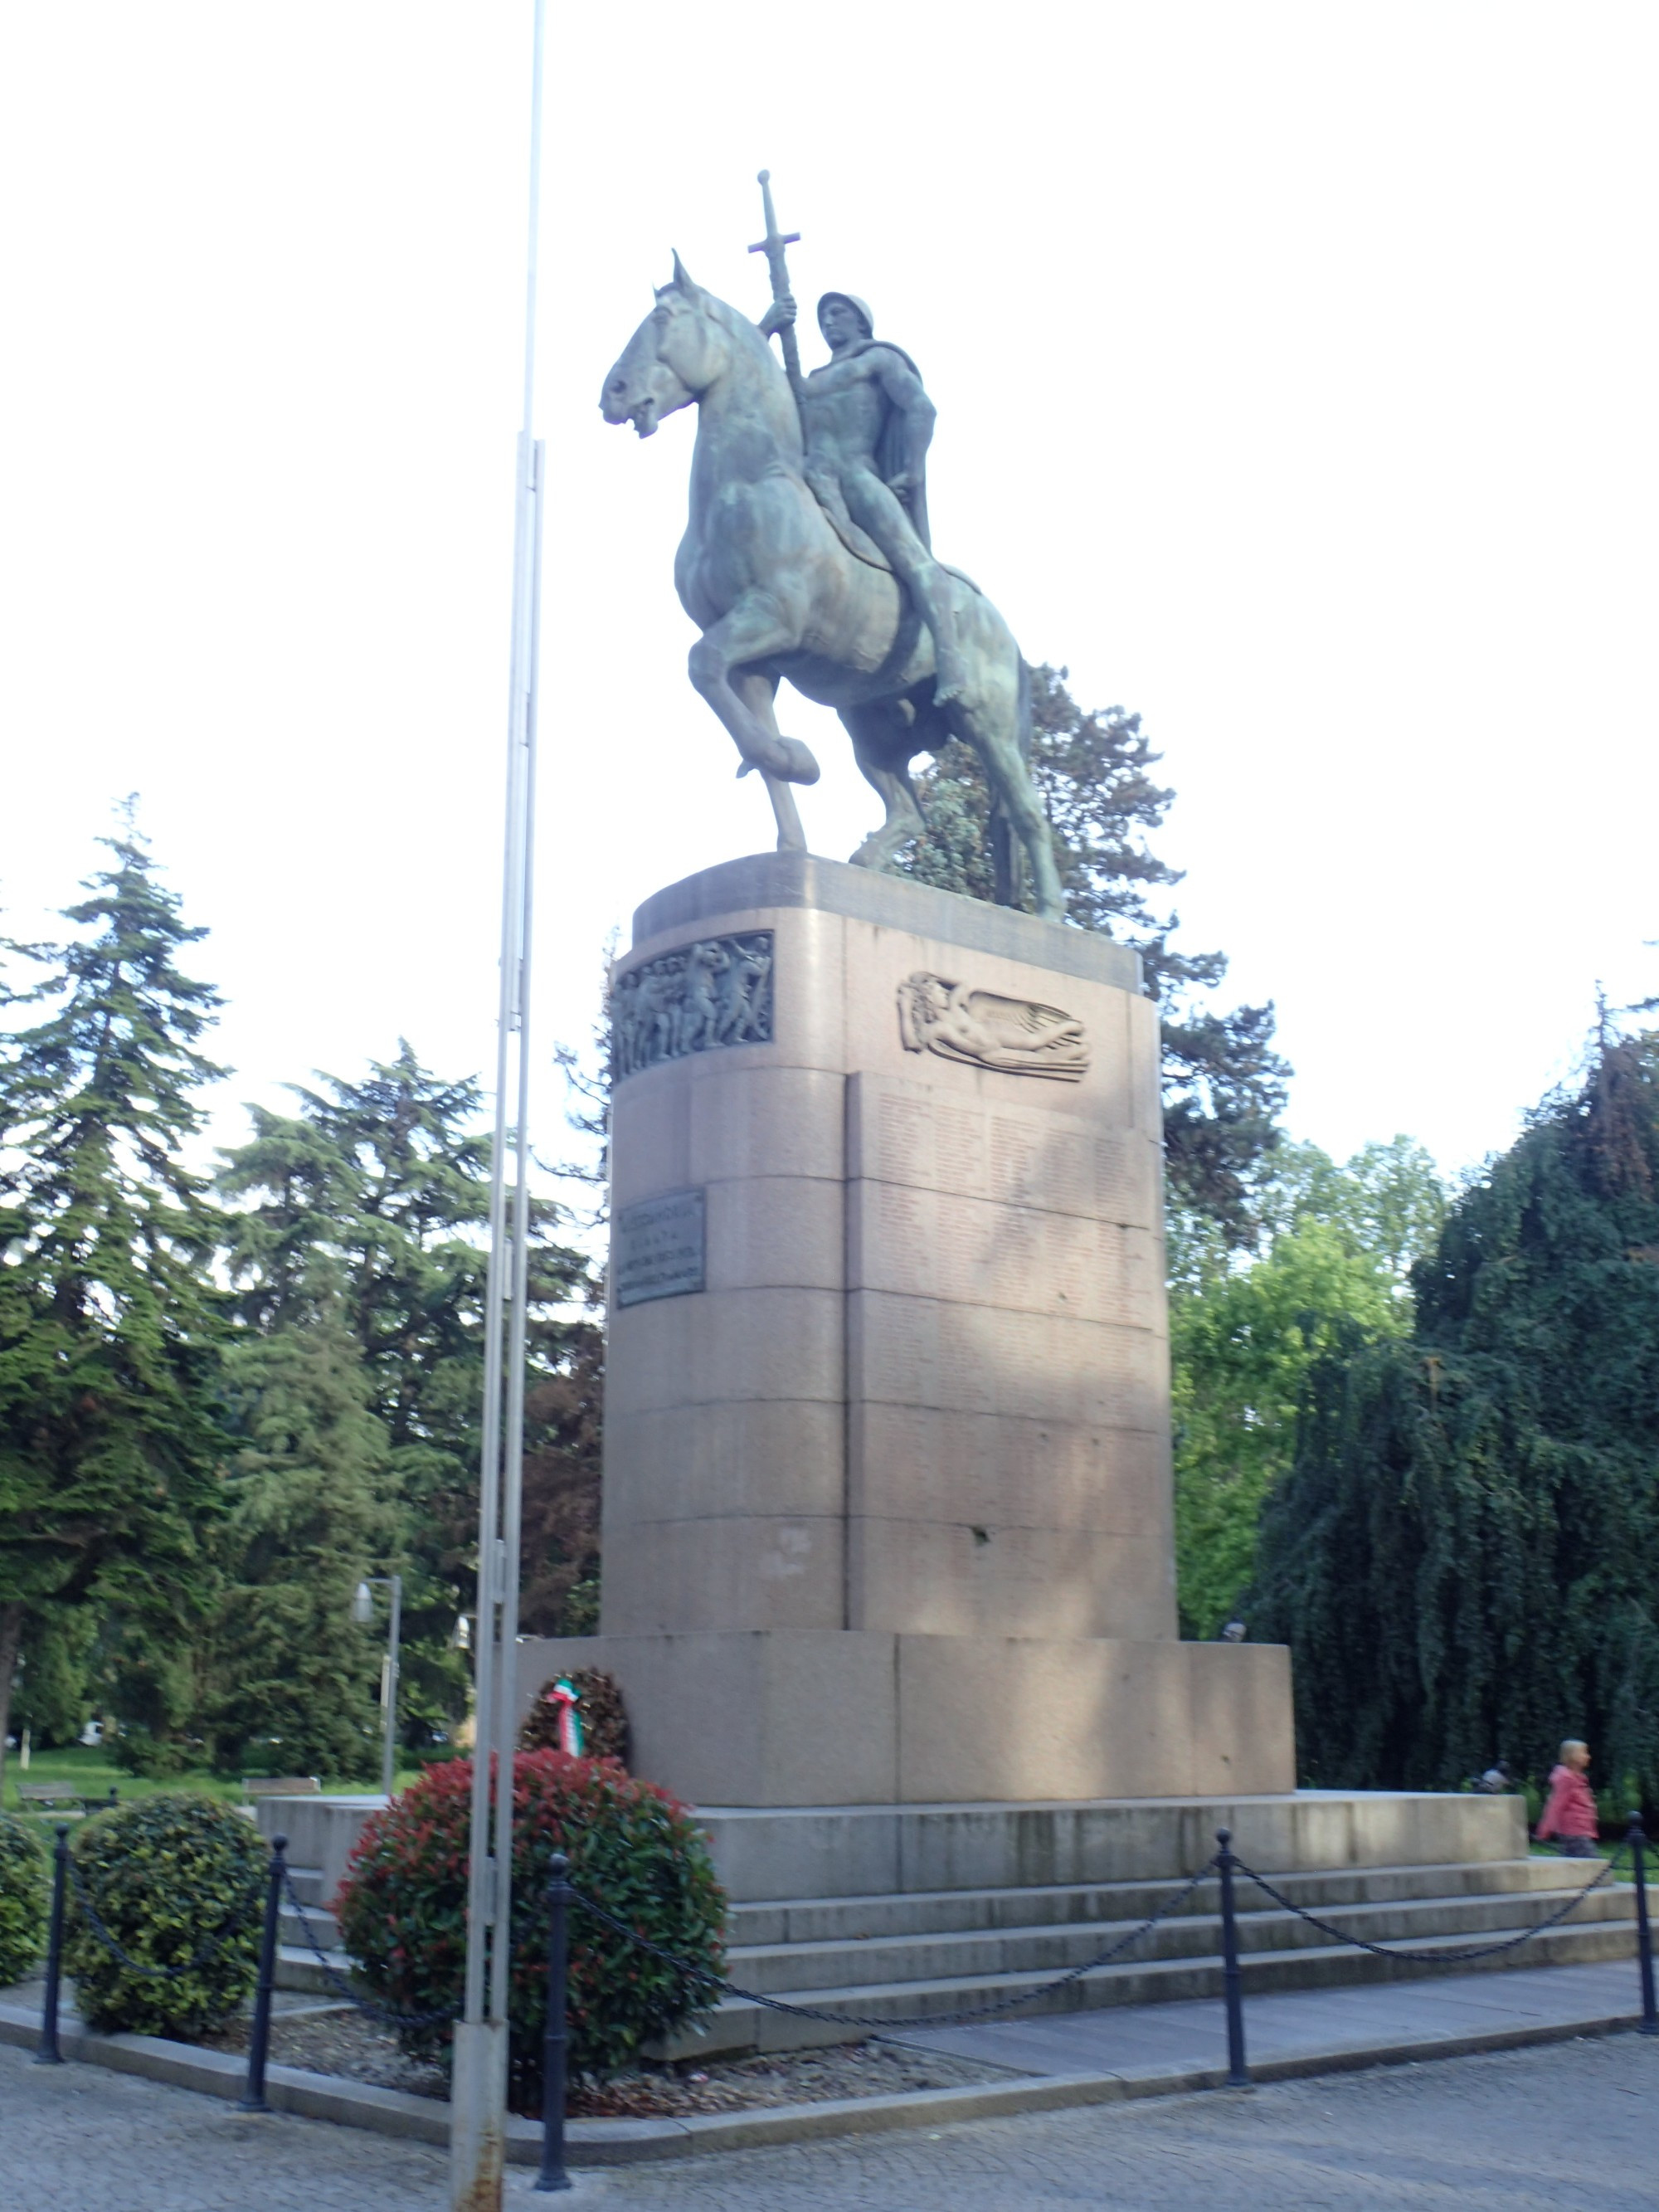 Monumento Caduti 1' Guerra Mondiale, Italy